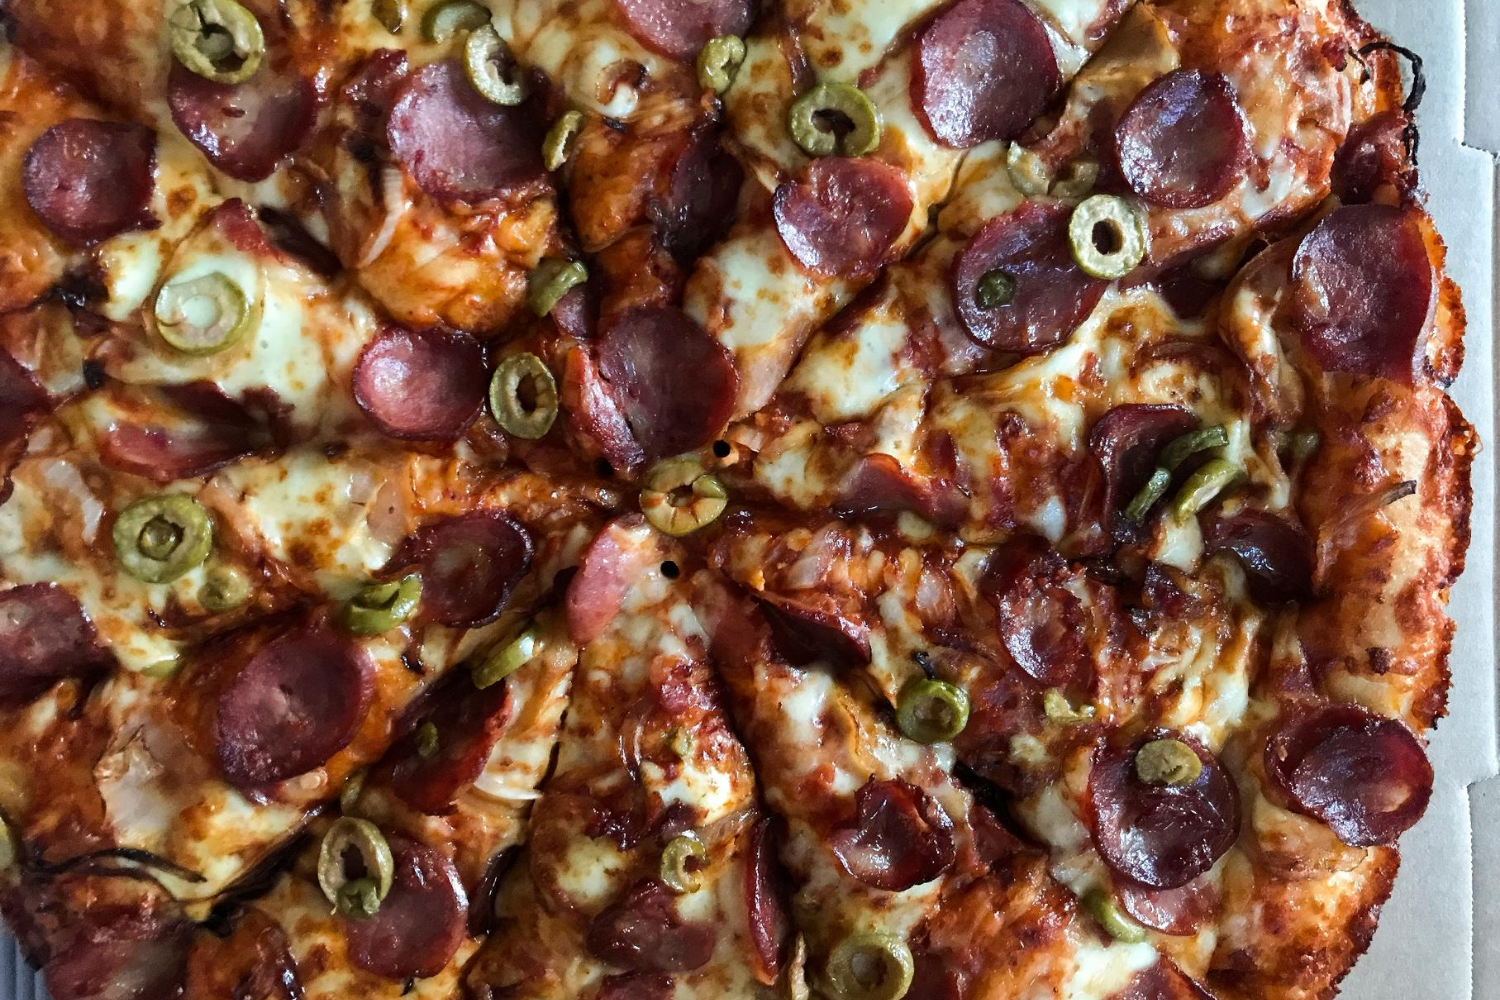 NOITE DE PIZZA HUT! 🍕 A Pizza Hut carrega no seu DNA o estilo